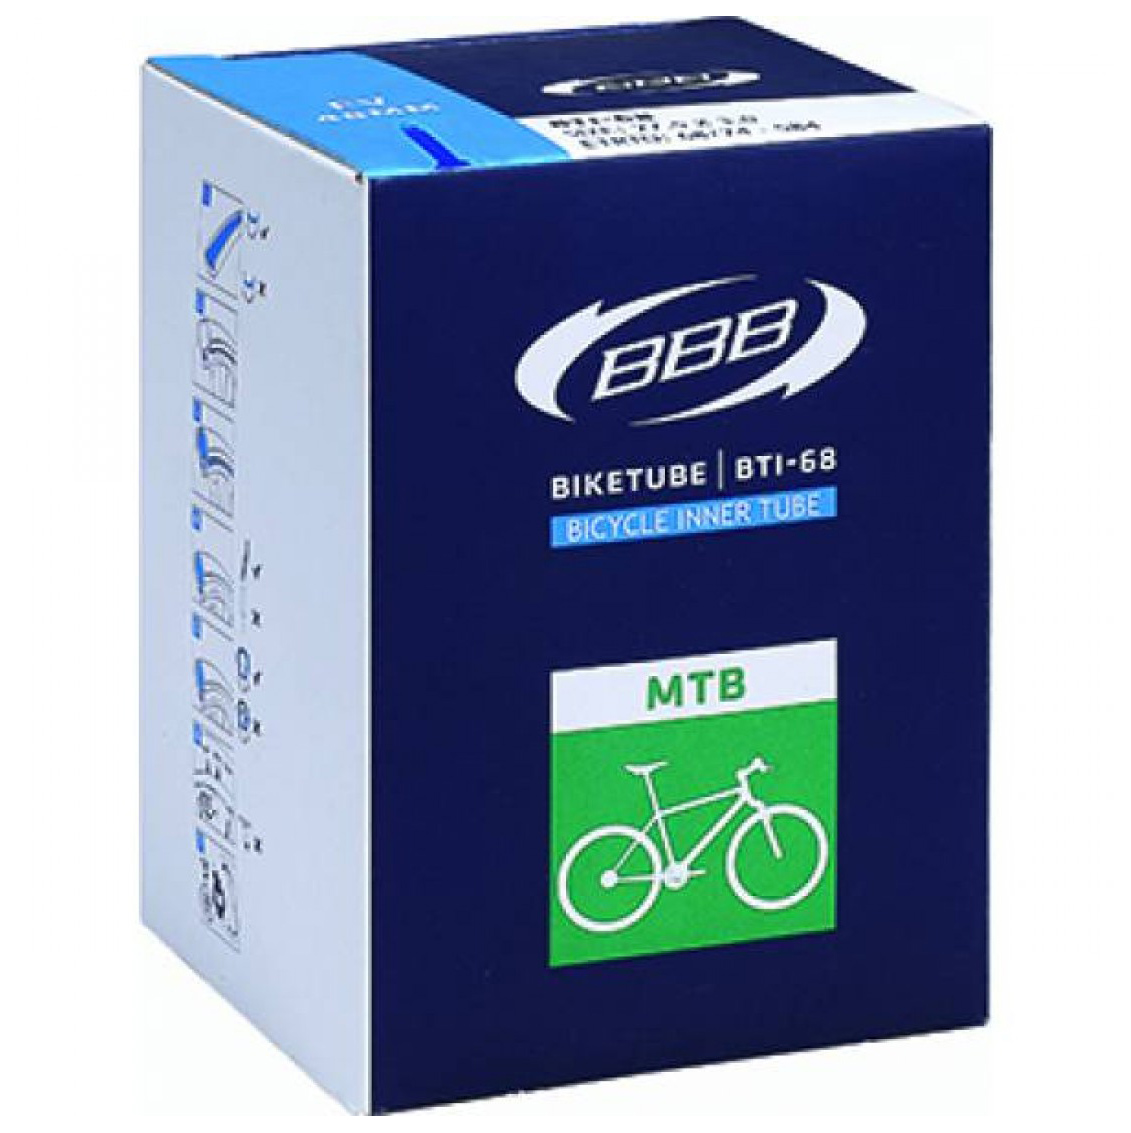  Камера для велосипеда BBB BTI-68 BikeTube 27.5*2,00/2.40 FV 48mm